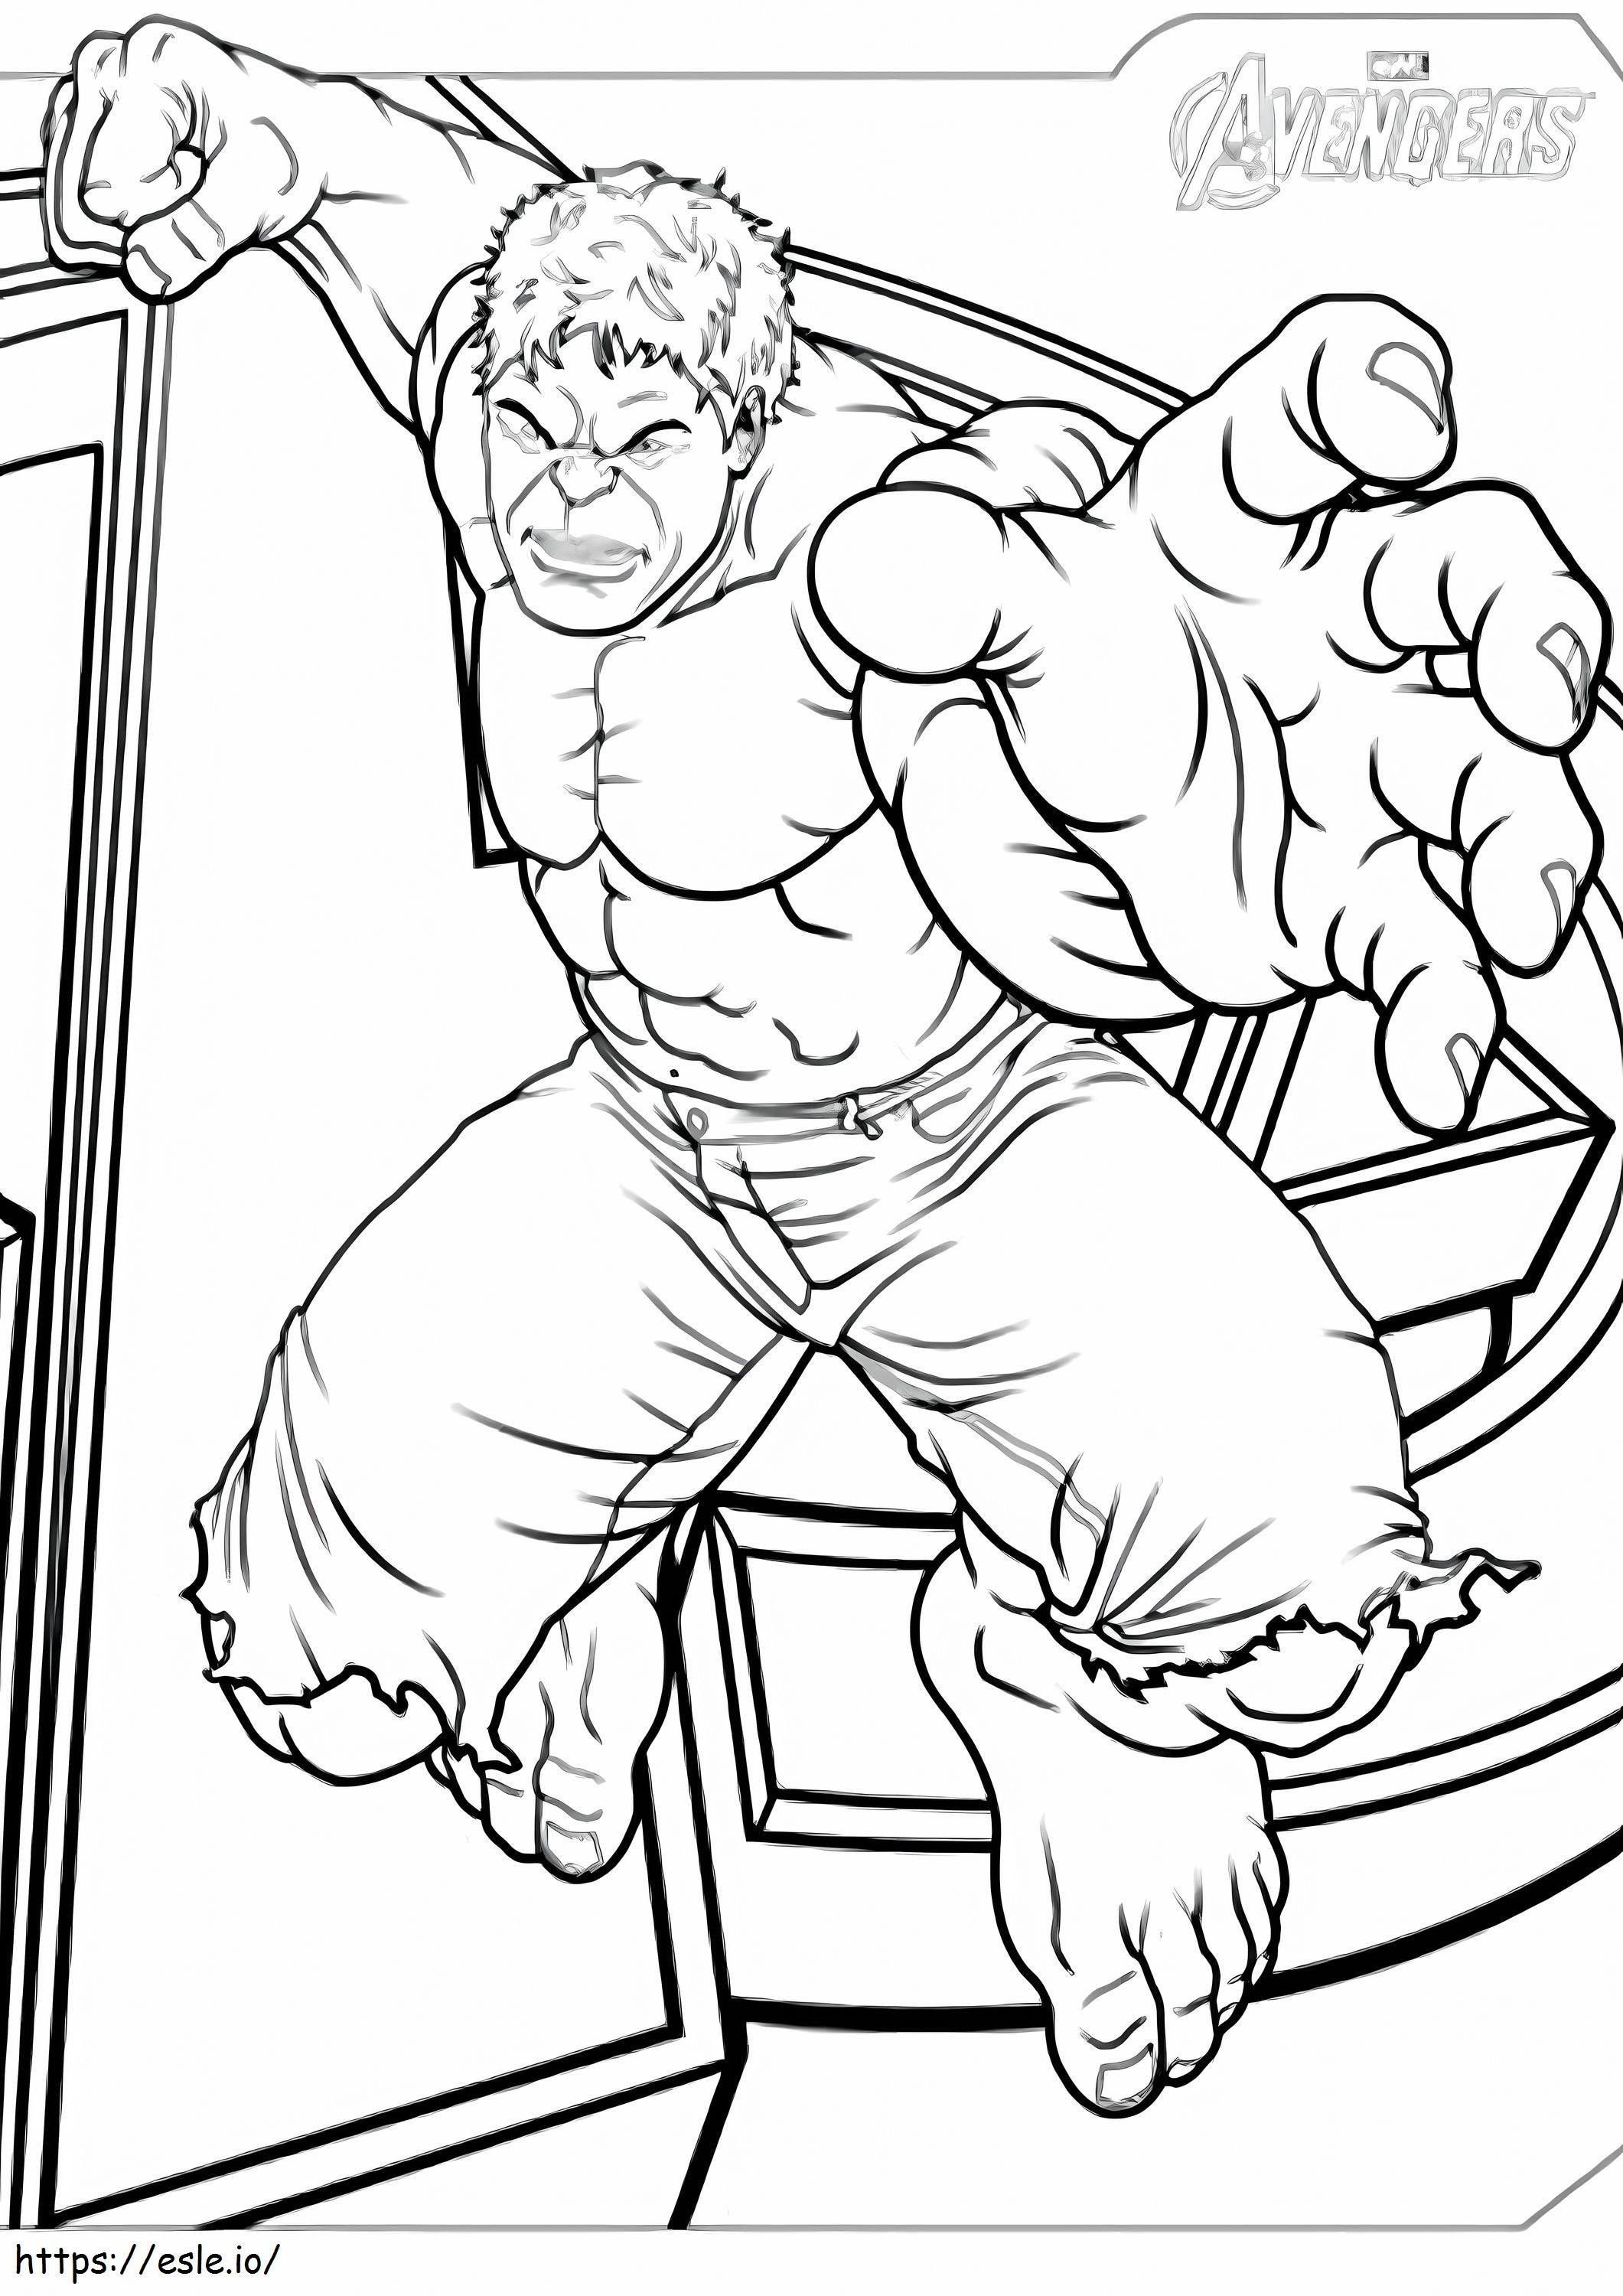 Hulk Attack coloring page